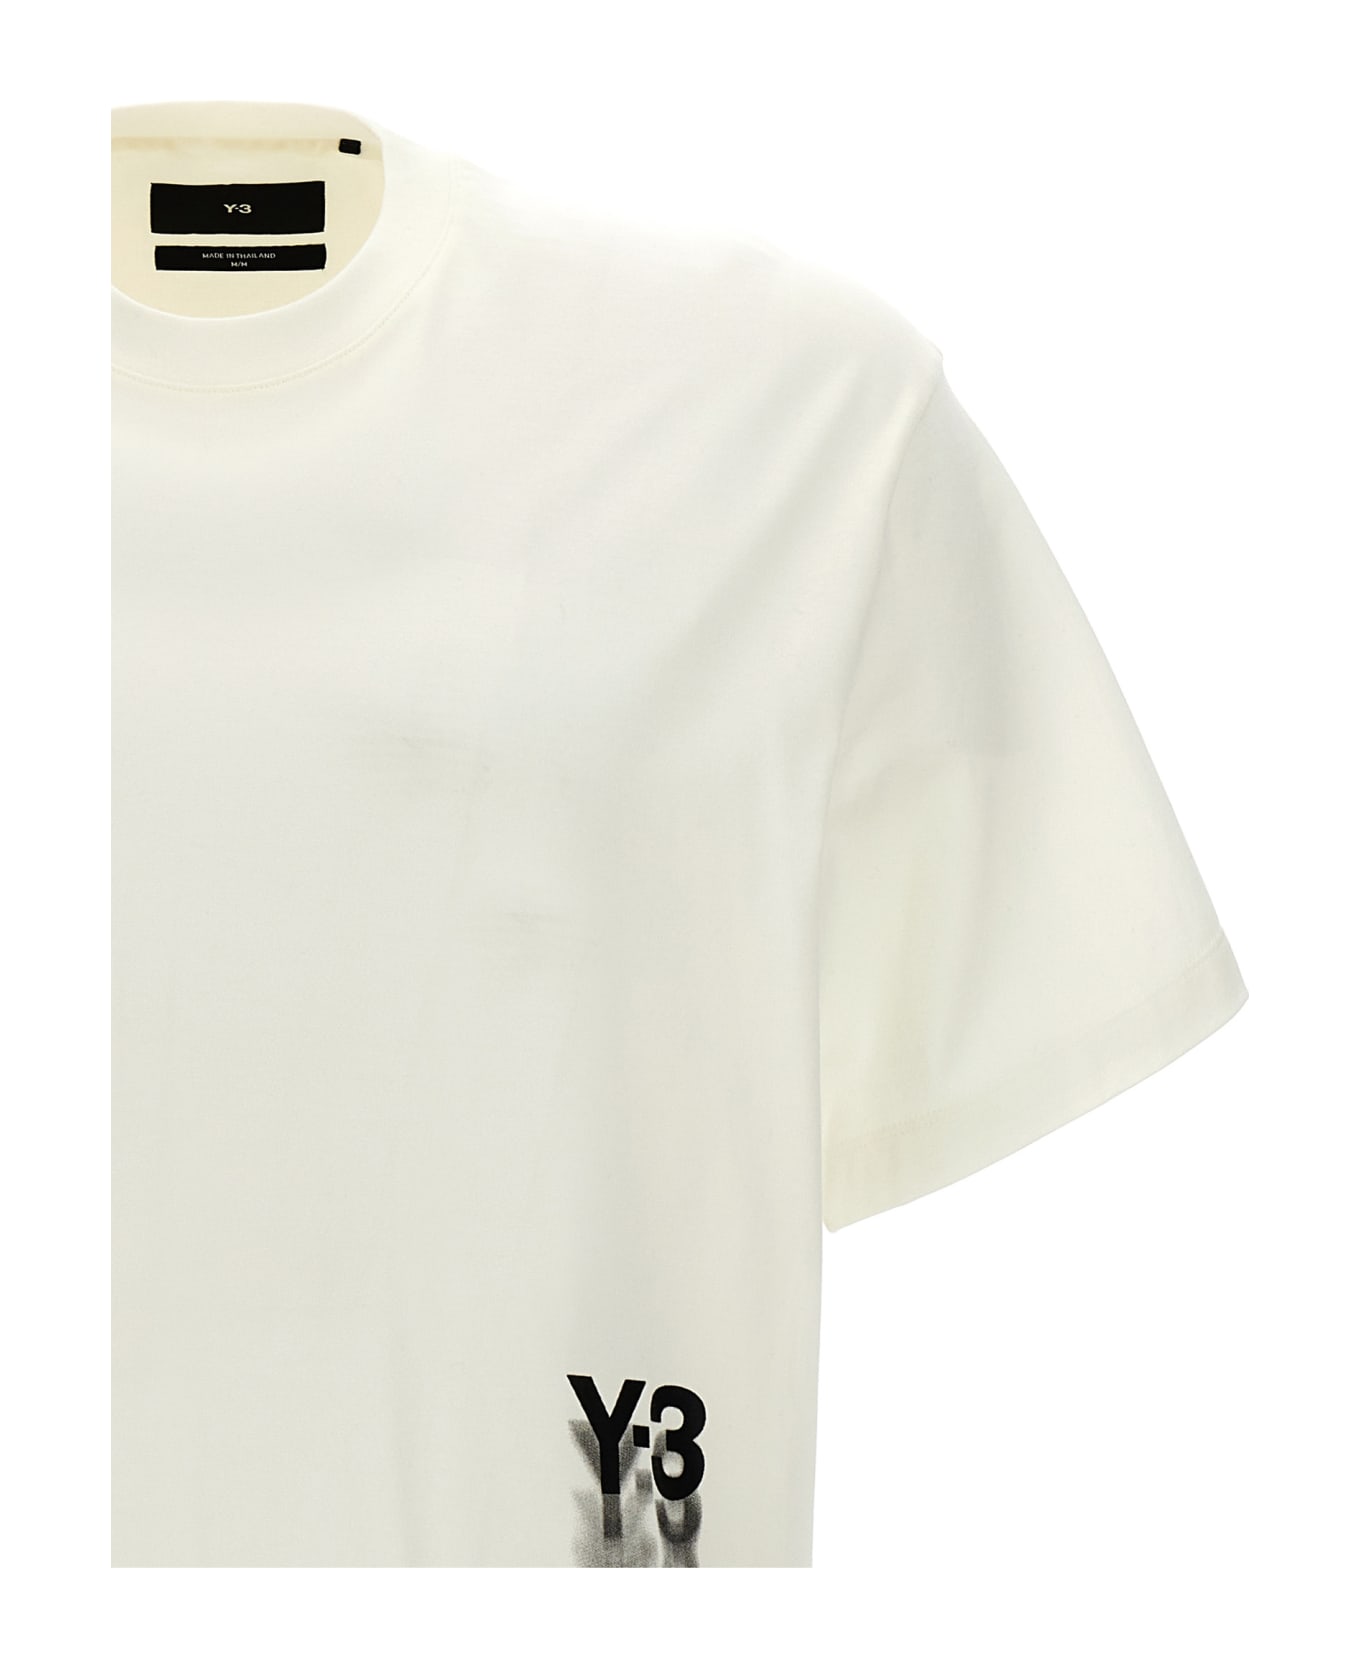 Y-3 'gfx' T-shirt - White Tシャツ